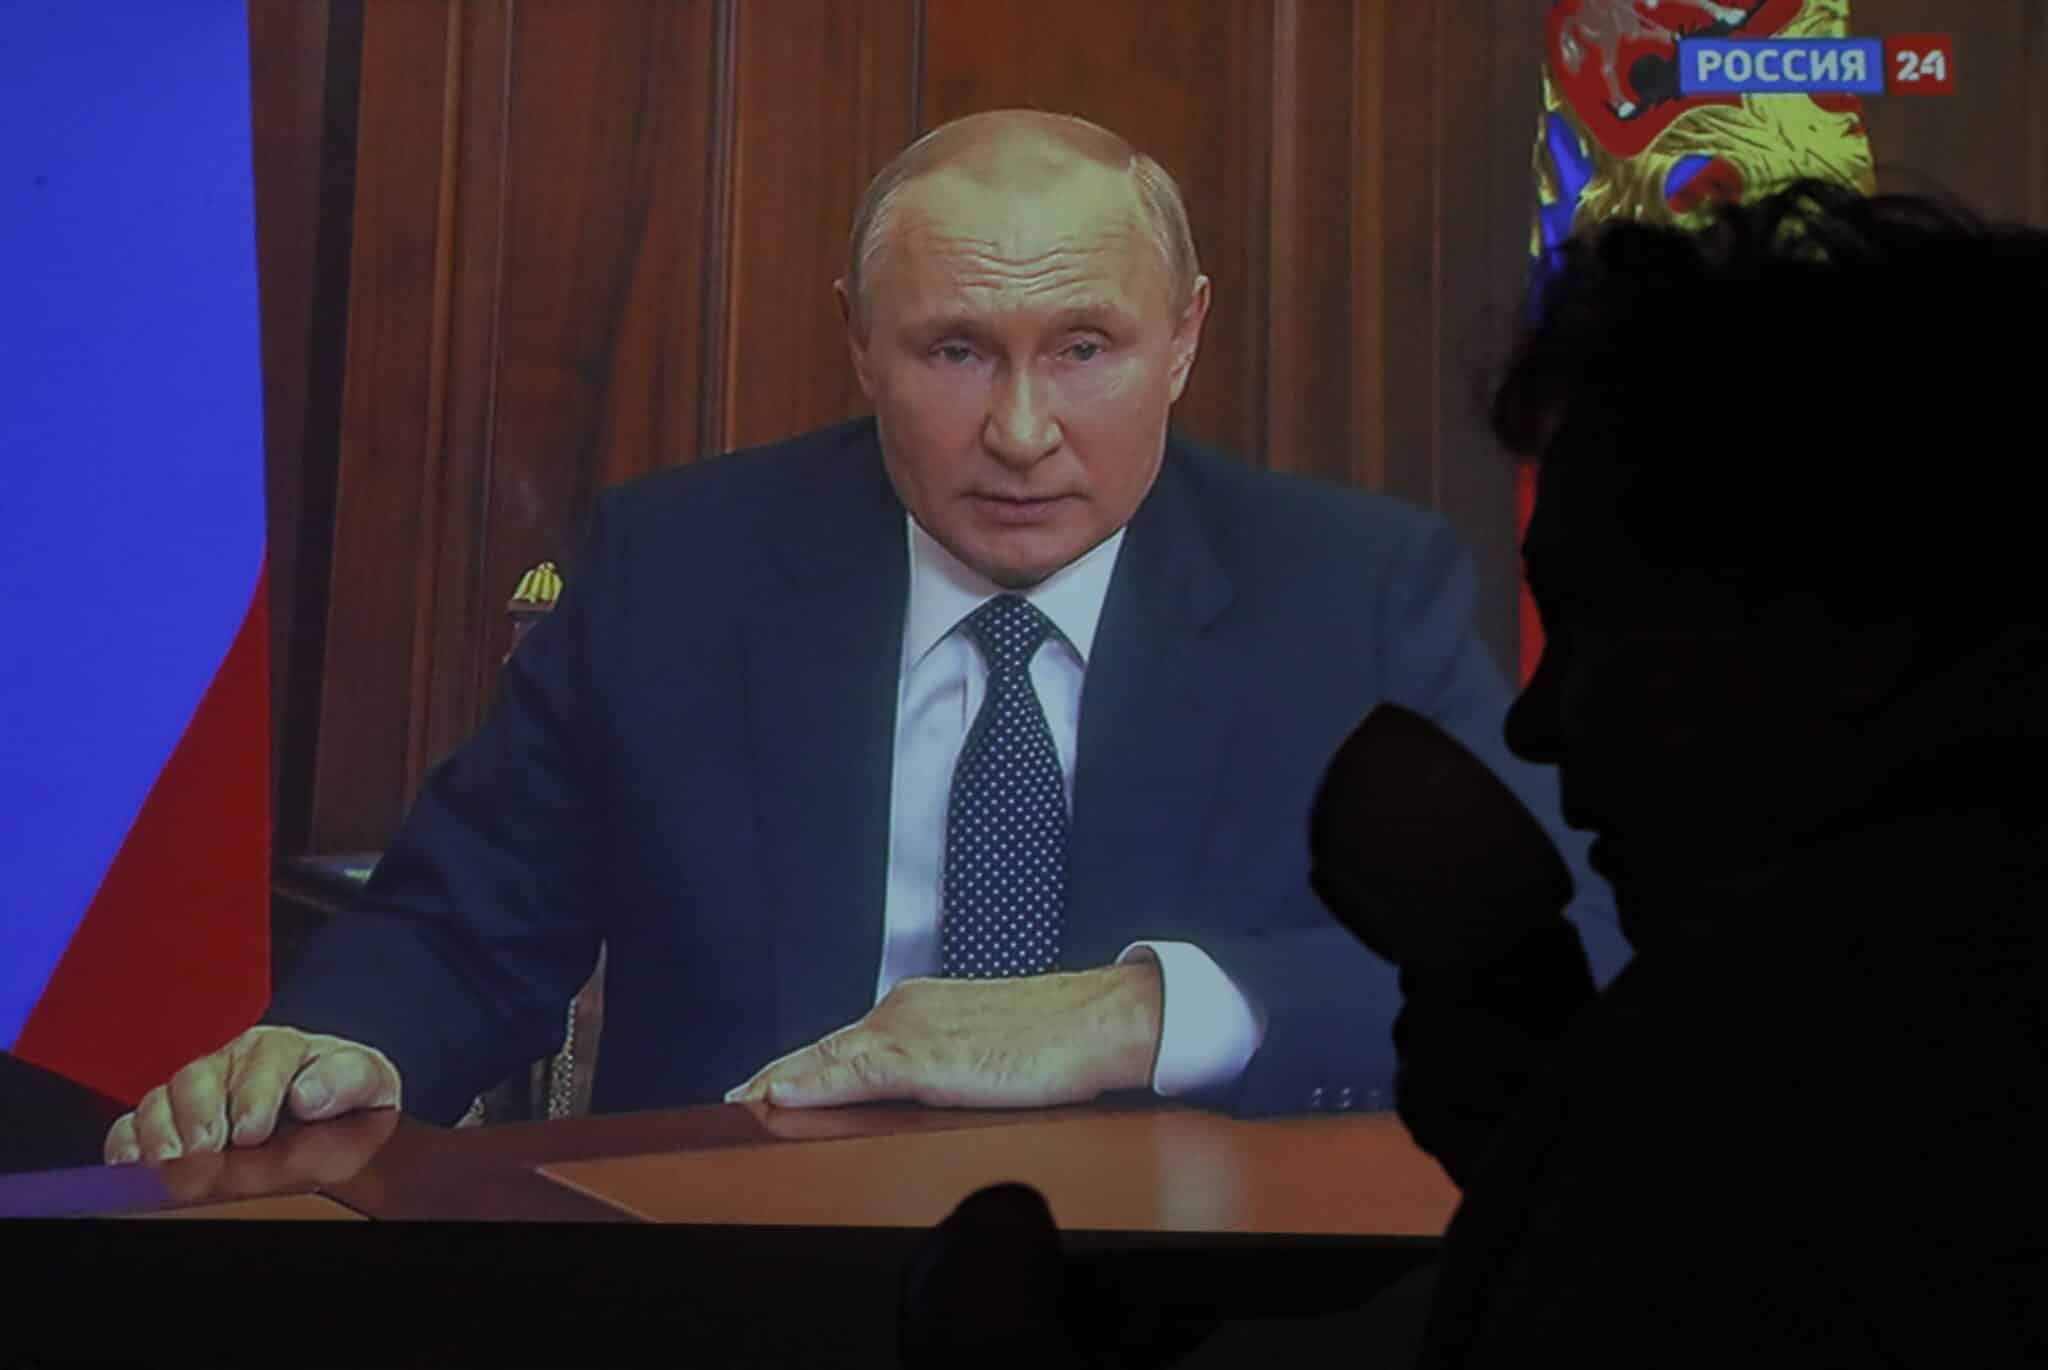 Retransmisión por televisión del discurso de Vladimir Putin.